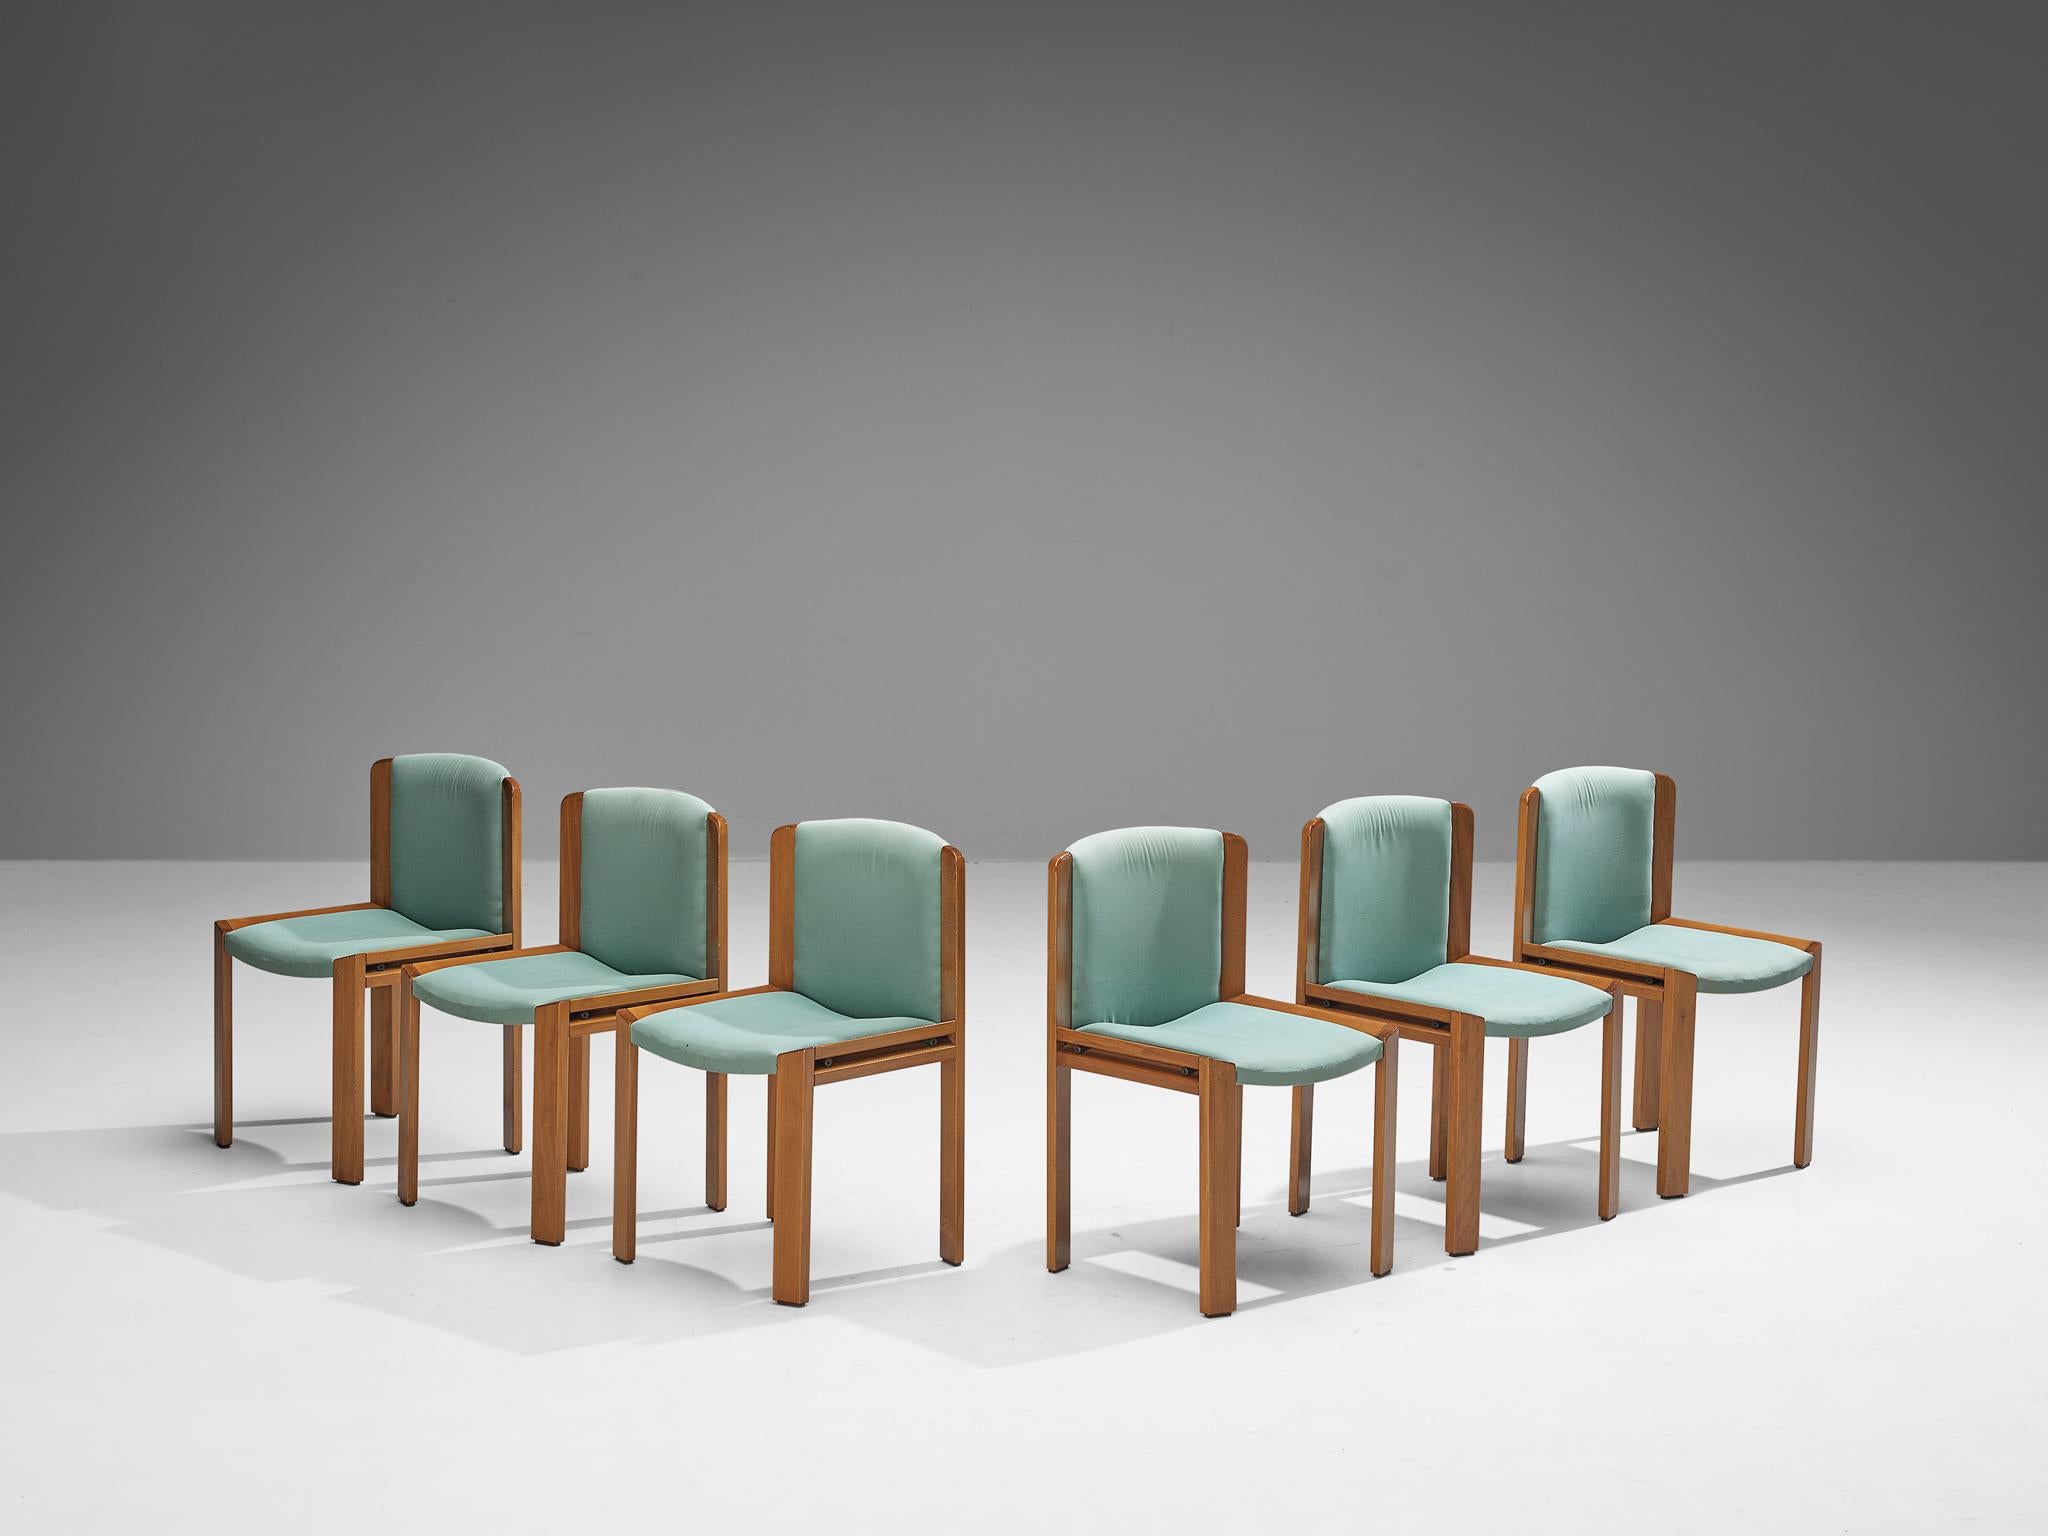 Joe Colombo pour Pozzi, ensemble de six chaises de salle à manger, modèle '300', tissu, hêtre teinté, Italie, 1966.

En 1966, Joe Colombo a fabriqué un ensemble de six chaises de salle à manger connu sous le nom de modèle 